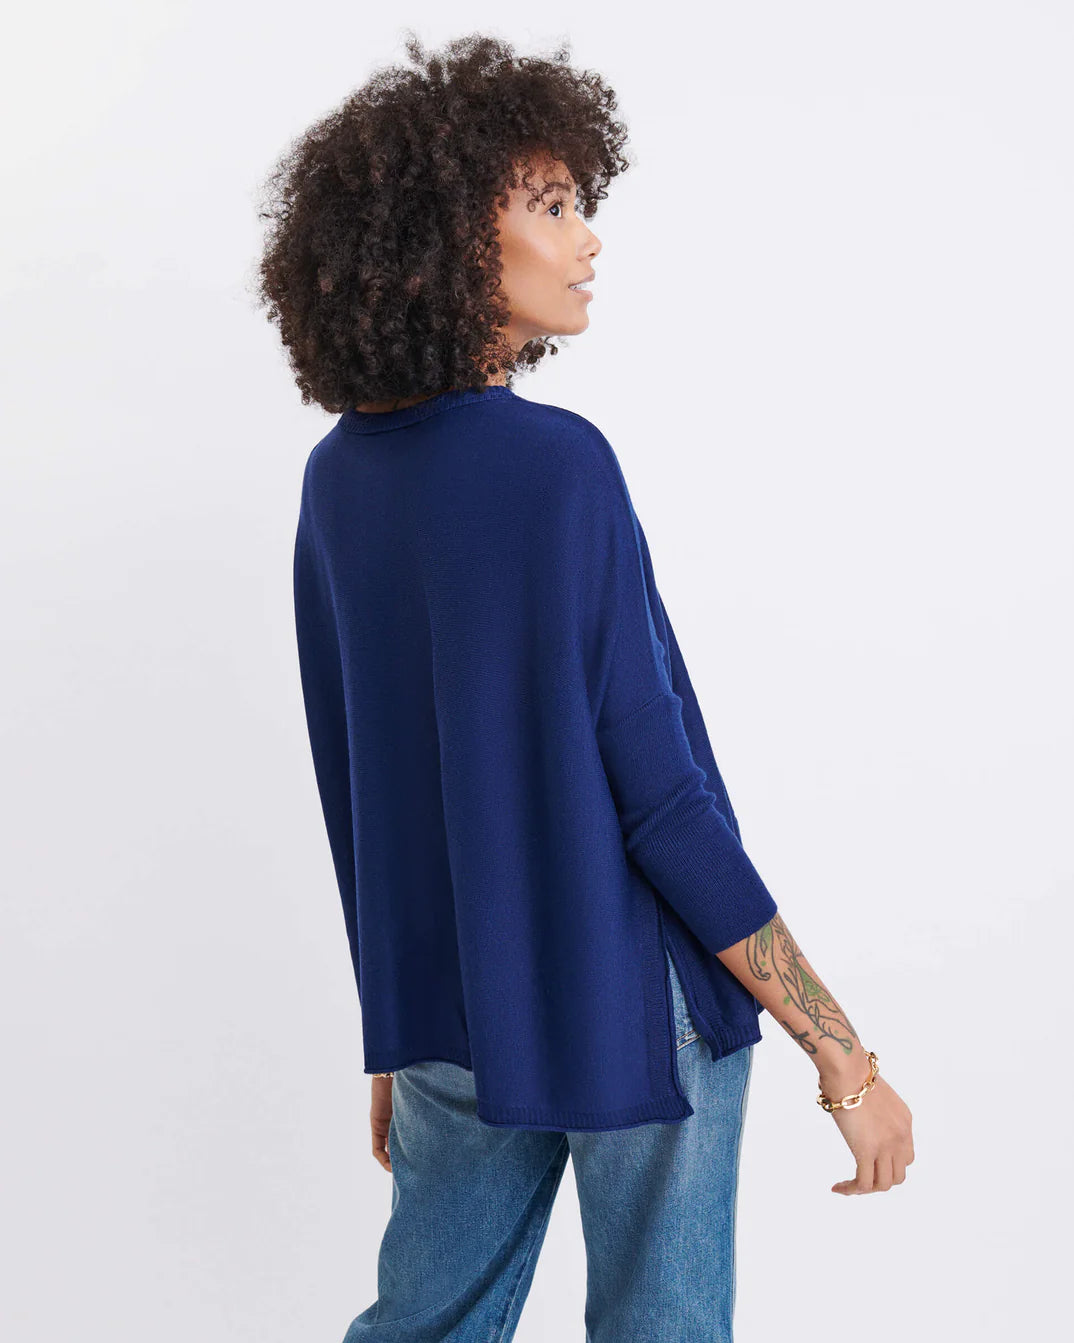 catalina sweater